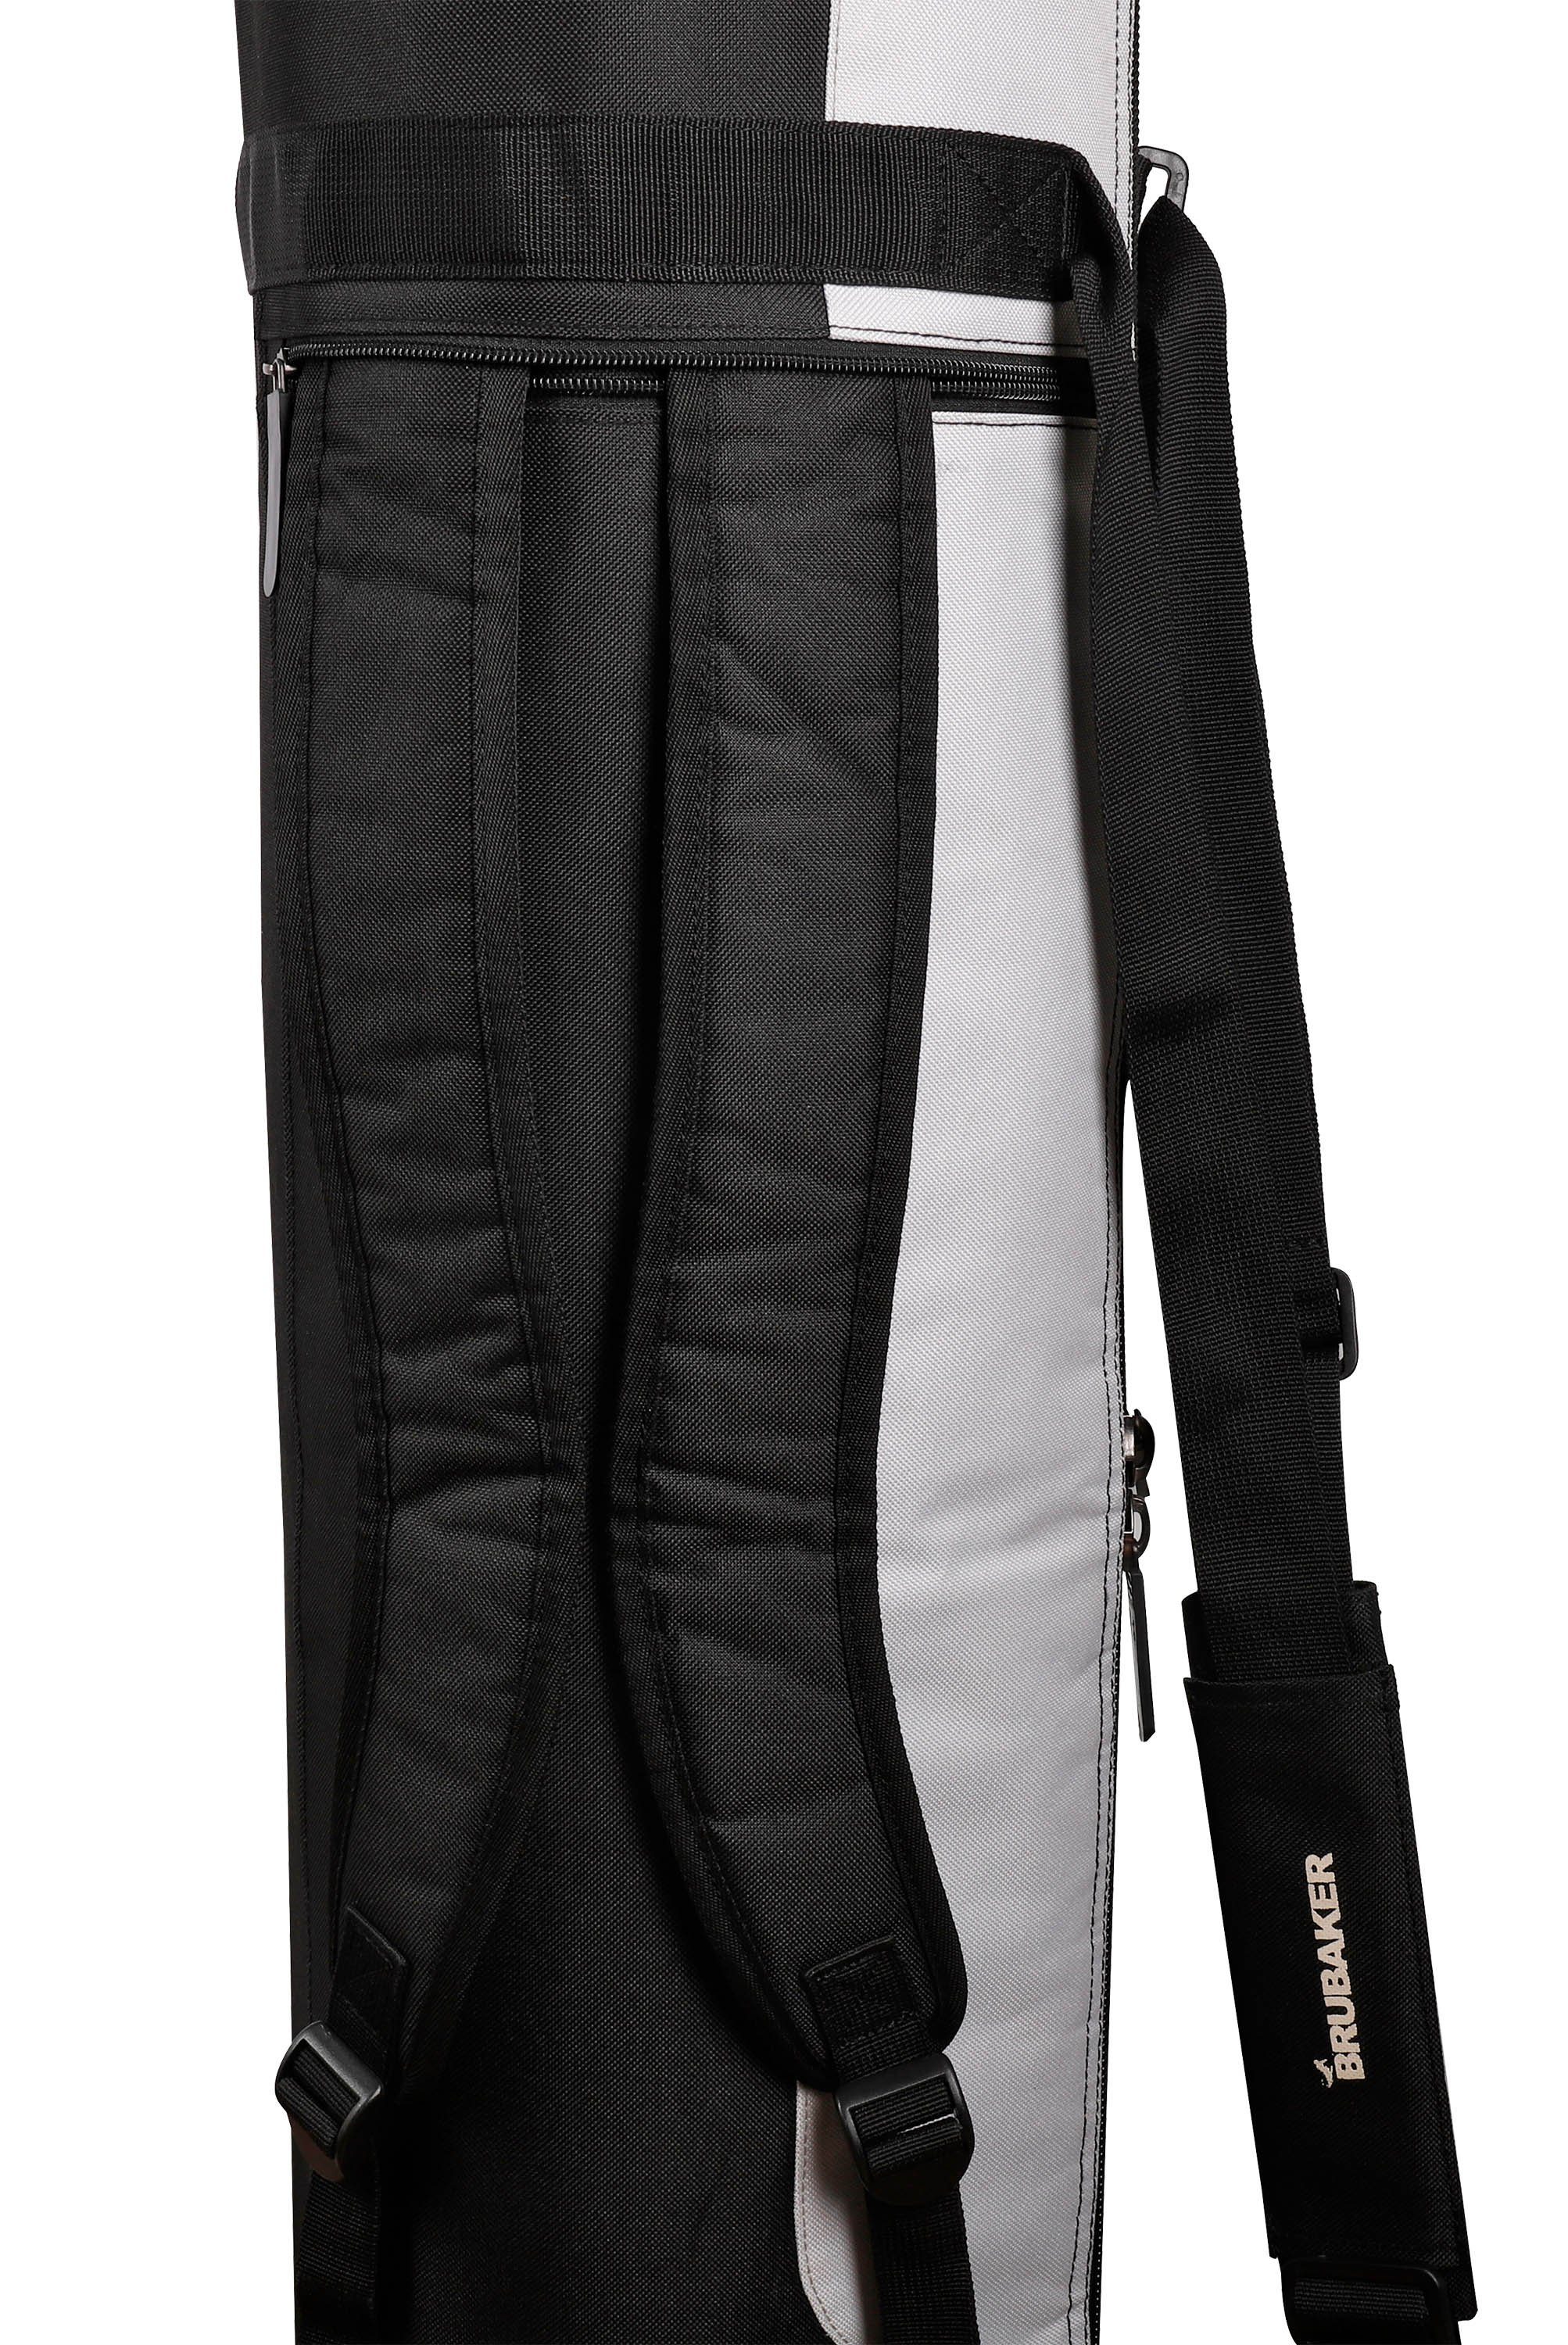 BRUBAKER Sporttasche und schnittfest), Skibag (1-tlg., Skisack mit Tasche Pro Carver reißfest für Ski Rucksacksystem, und und Skistöcke, gepolsterter XP Skier Skitasche Zipperverschluss